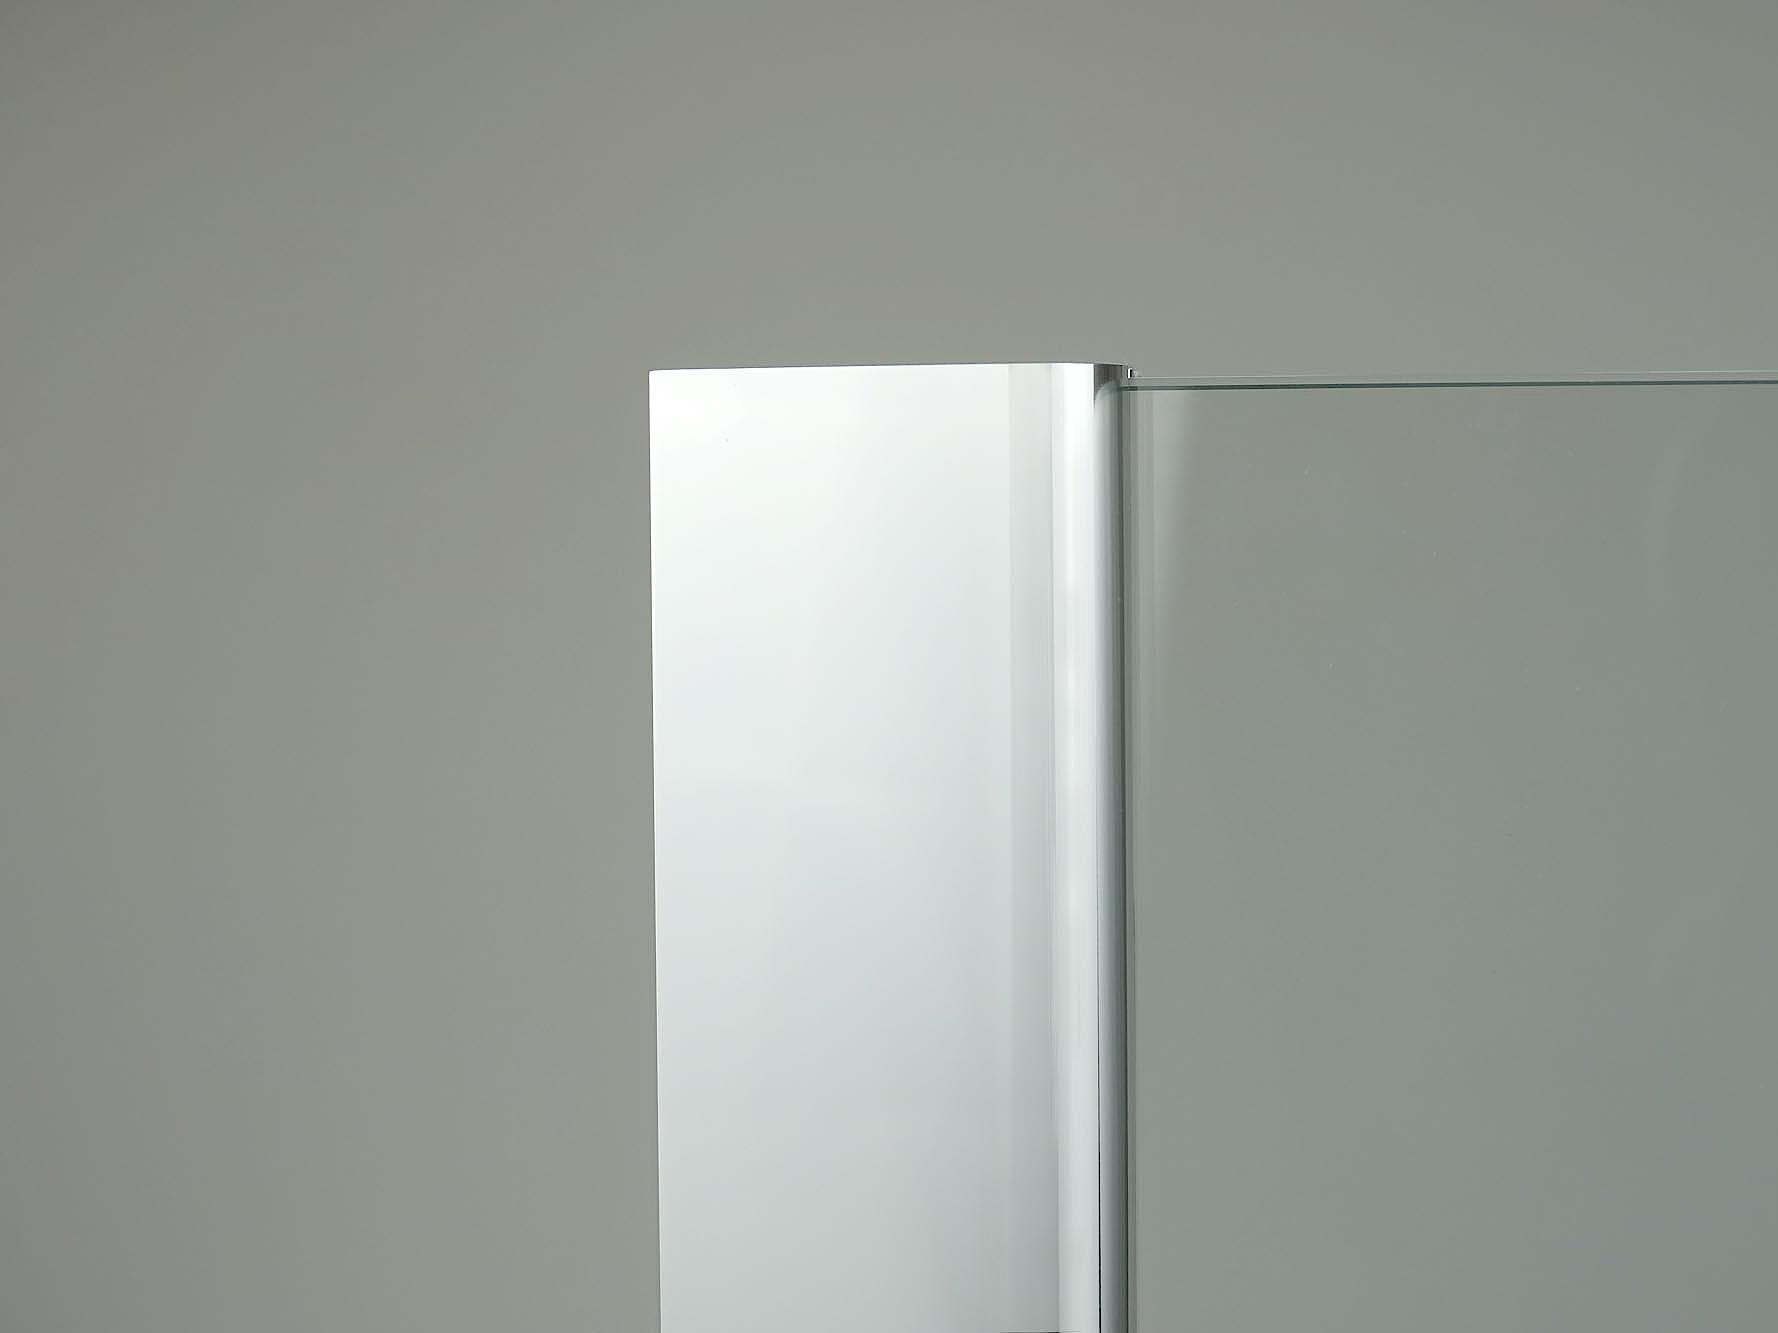 Kabina prysznicowa Kermi, powierzchnia profilu ściennego w kolorze srebro wysoki połysk